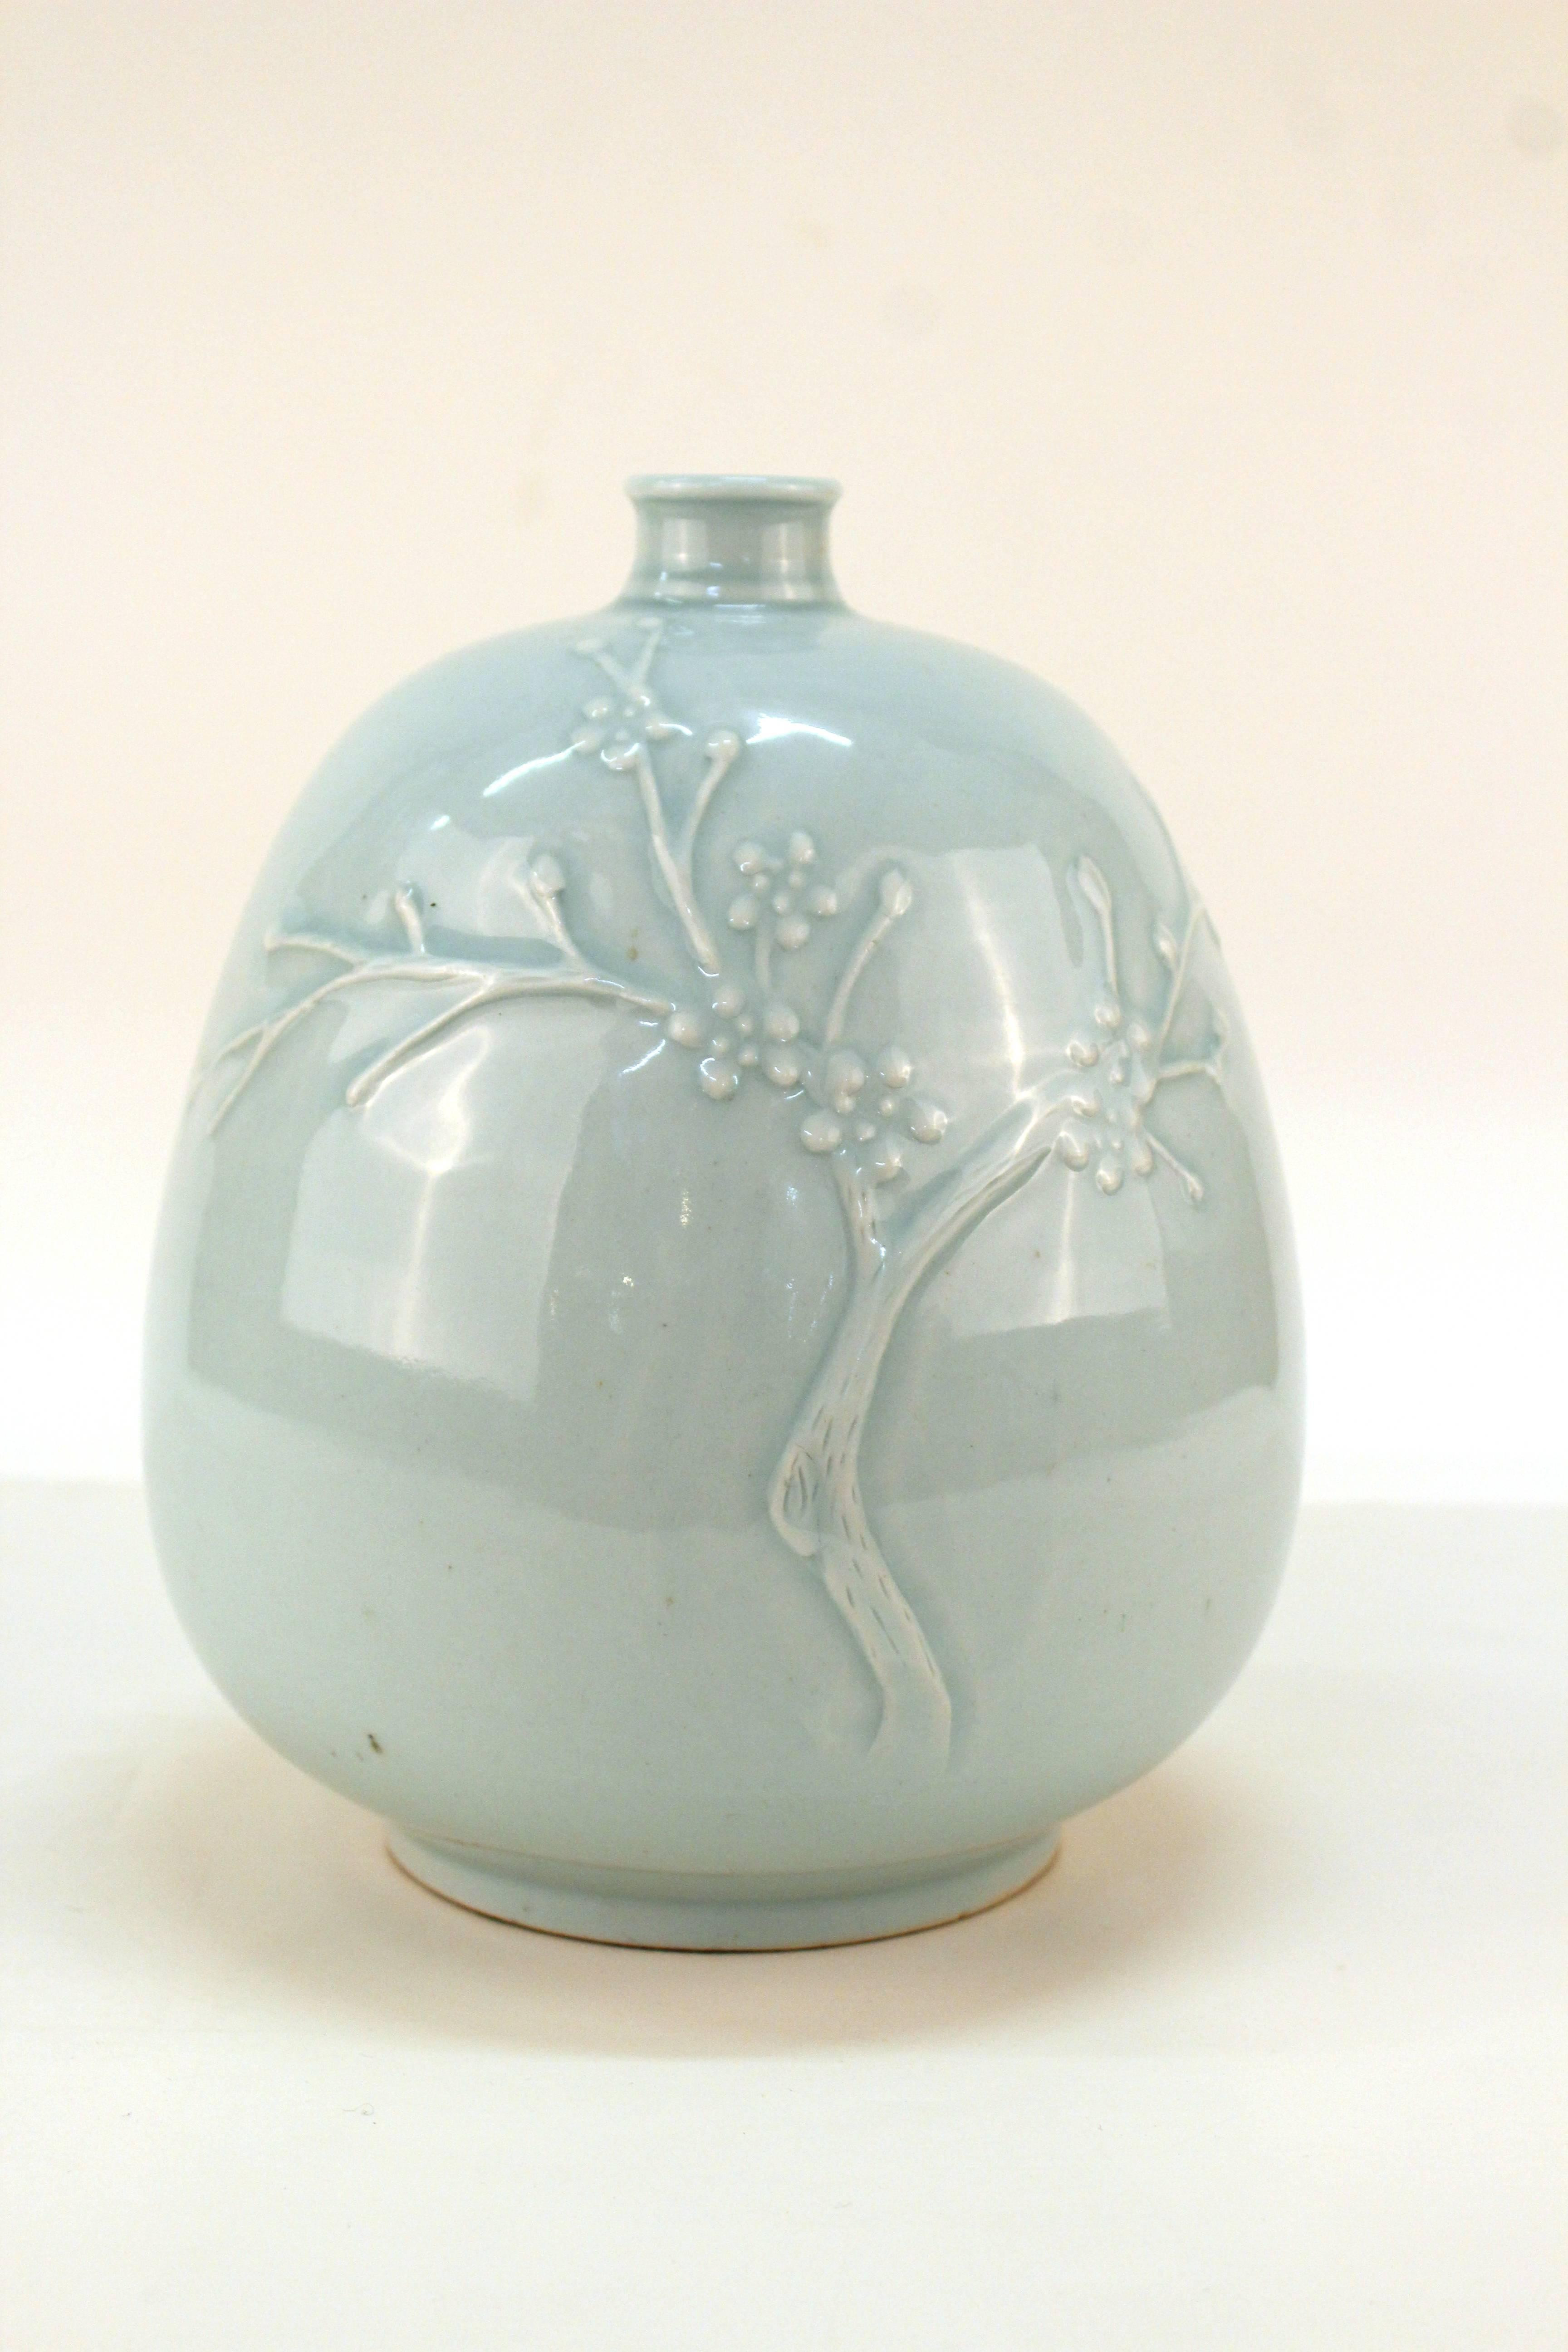 12 attractive Delft Blue Vase 2024 free download delft blue vase of glazed pottery flower vase gardening flower and vegetables pertaining to korean celadon glazed pottery vase for sale at 1stdibs